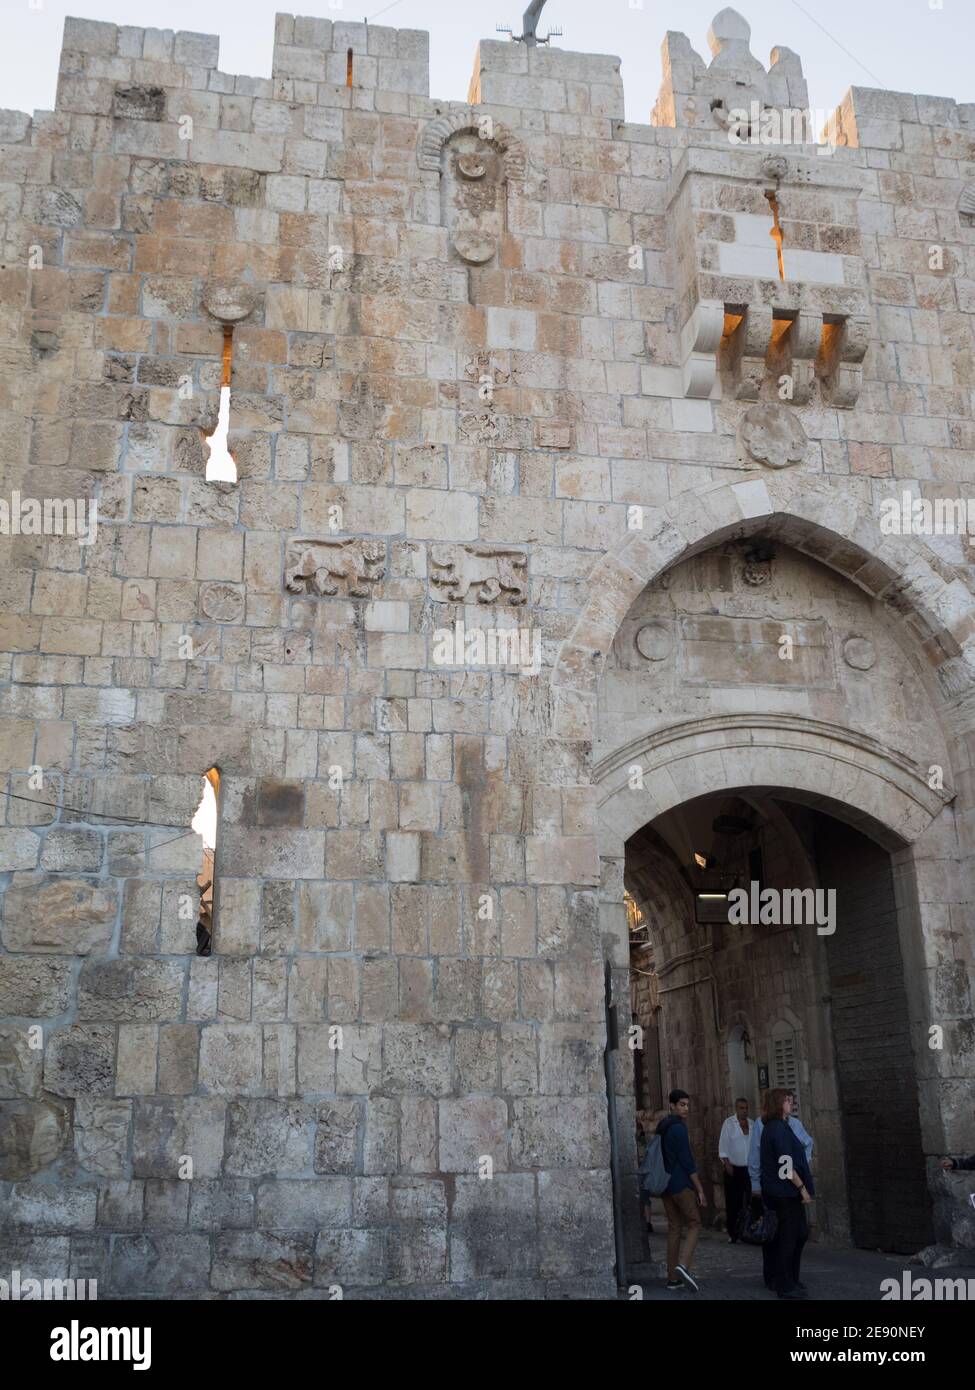 Lions Gate, Old Jerusalem Stock Photo